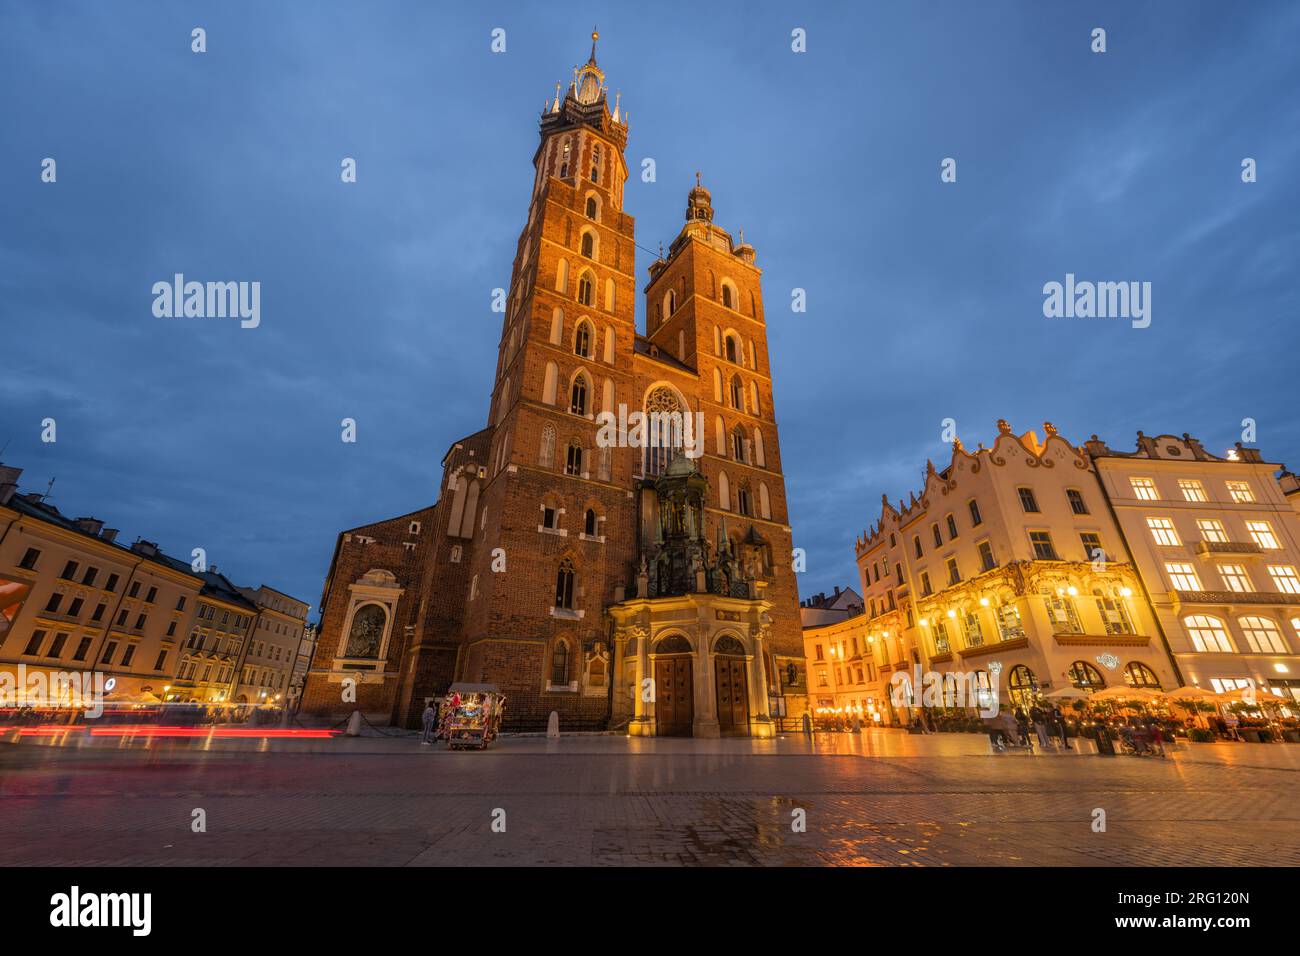 Main Market Square (Rynek Glowny) with Sukiennice (Cloth Hall) and St. Mary's (Mariacki) Church, Poland, Krakow. Stock Photo